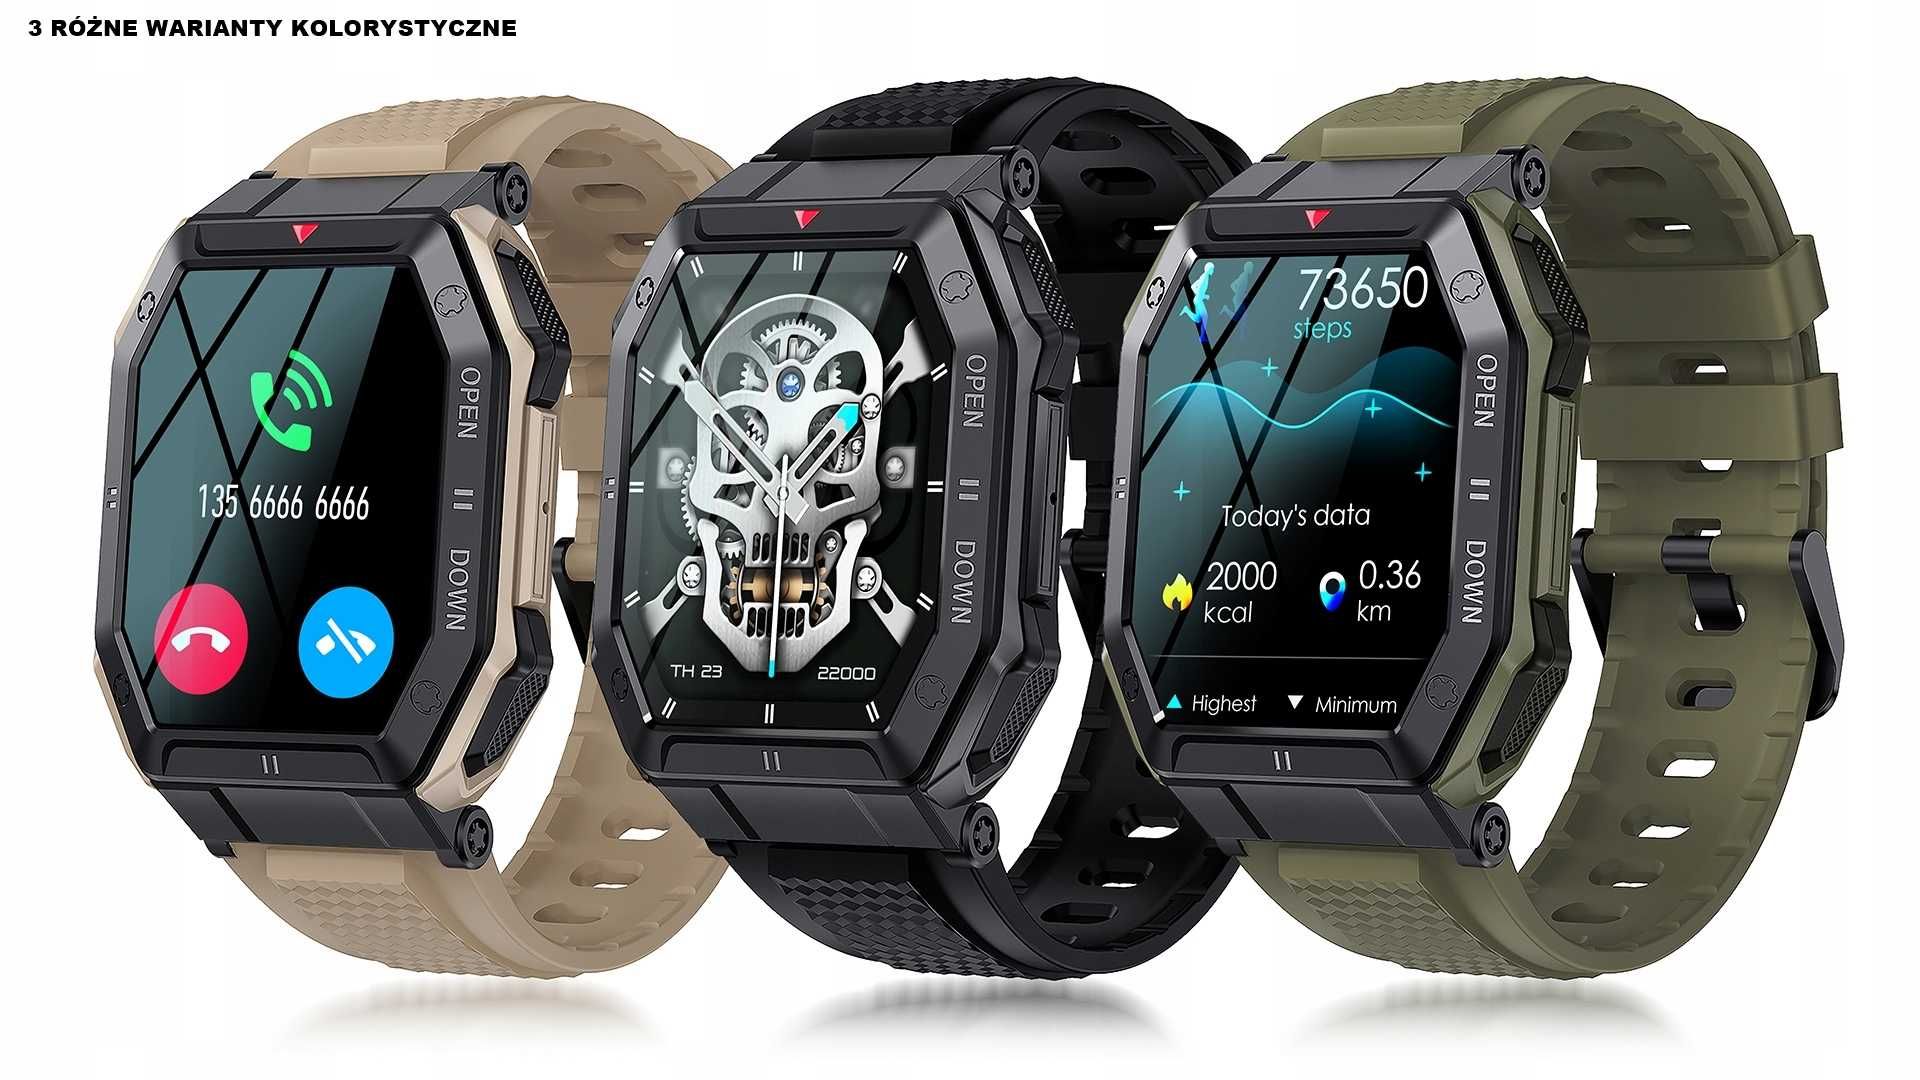 Smartwatch - Giga Okazja !!! - gwarancja jakości i promocja 30 %